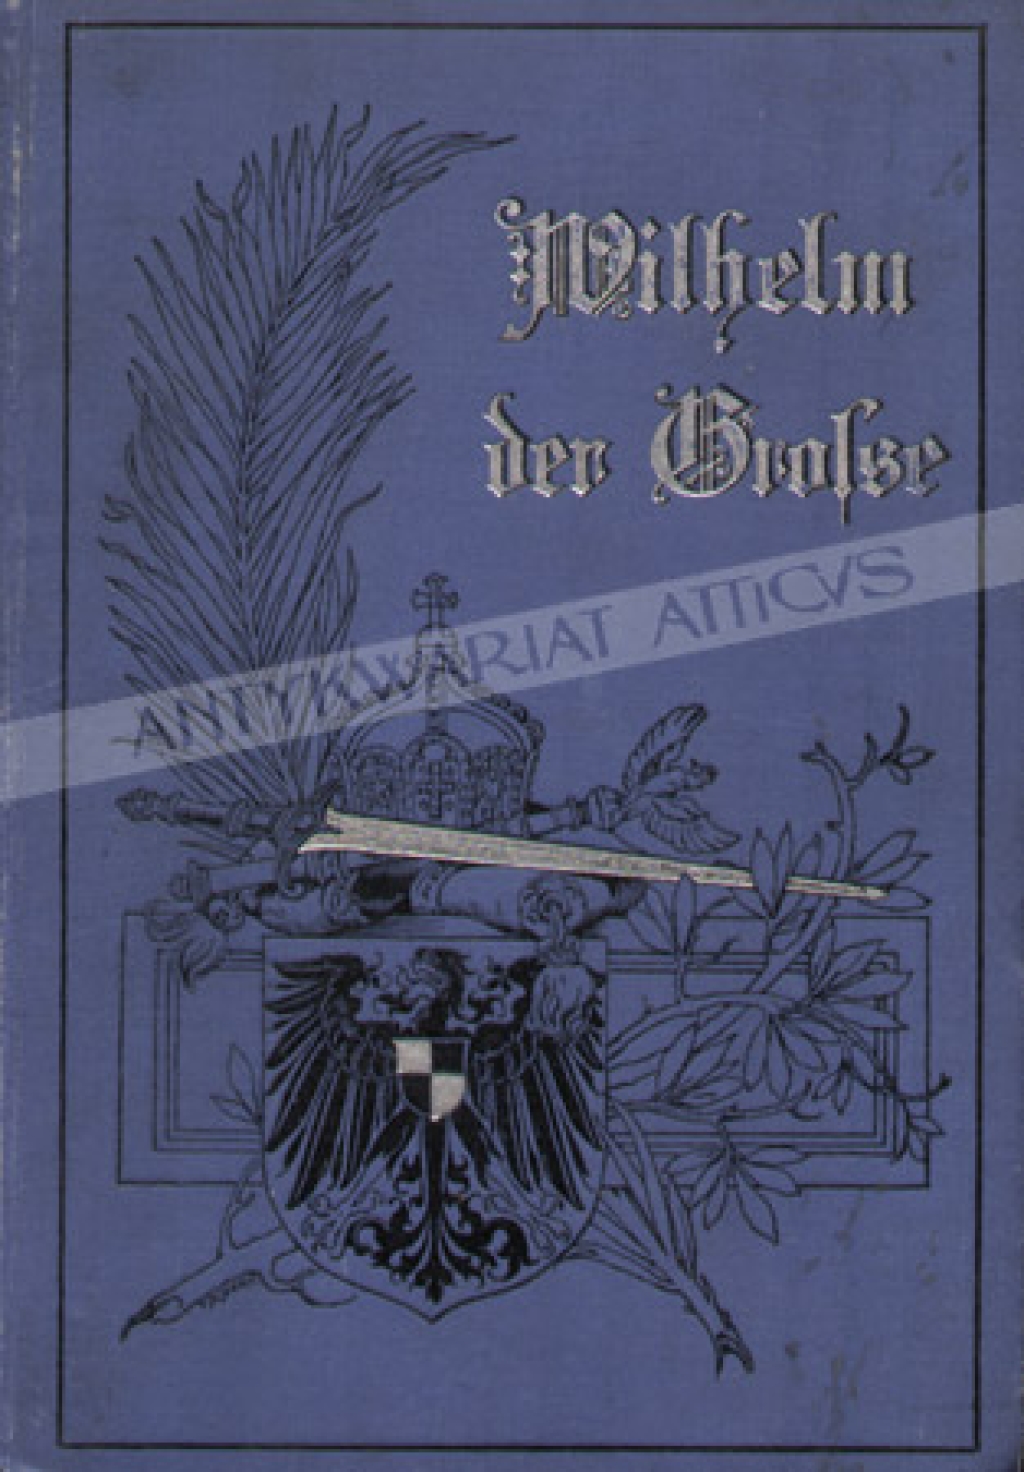 Wilhelm der Große. Ein vaterlandisches heldengedicht